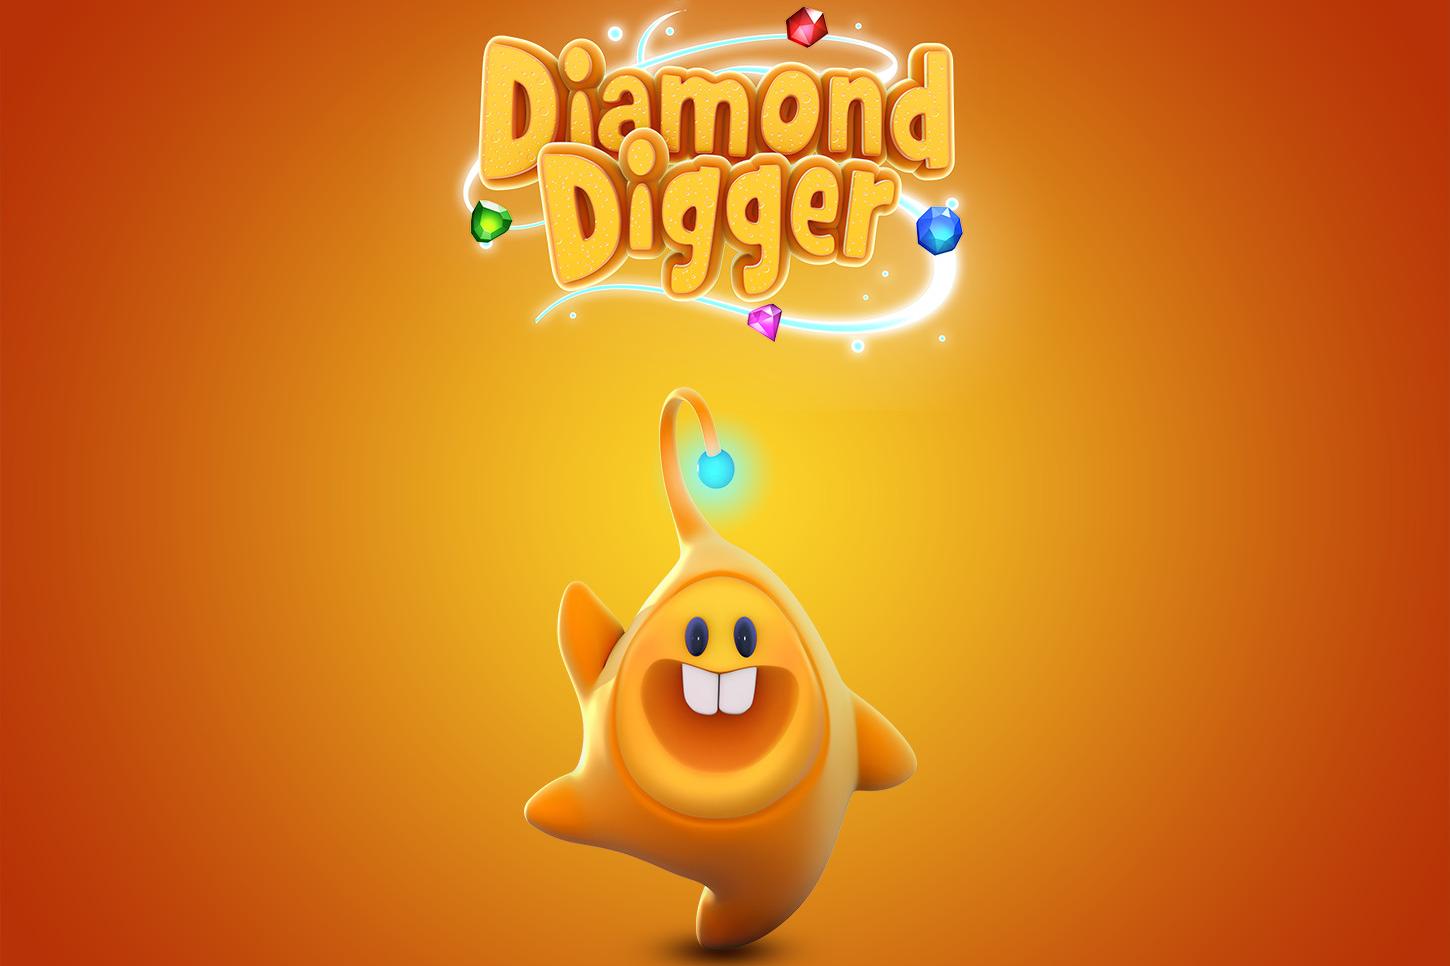 UI for King's game: Diamond Digger Saga